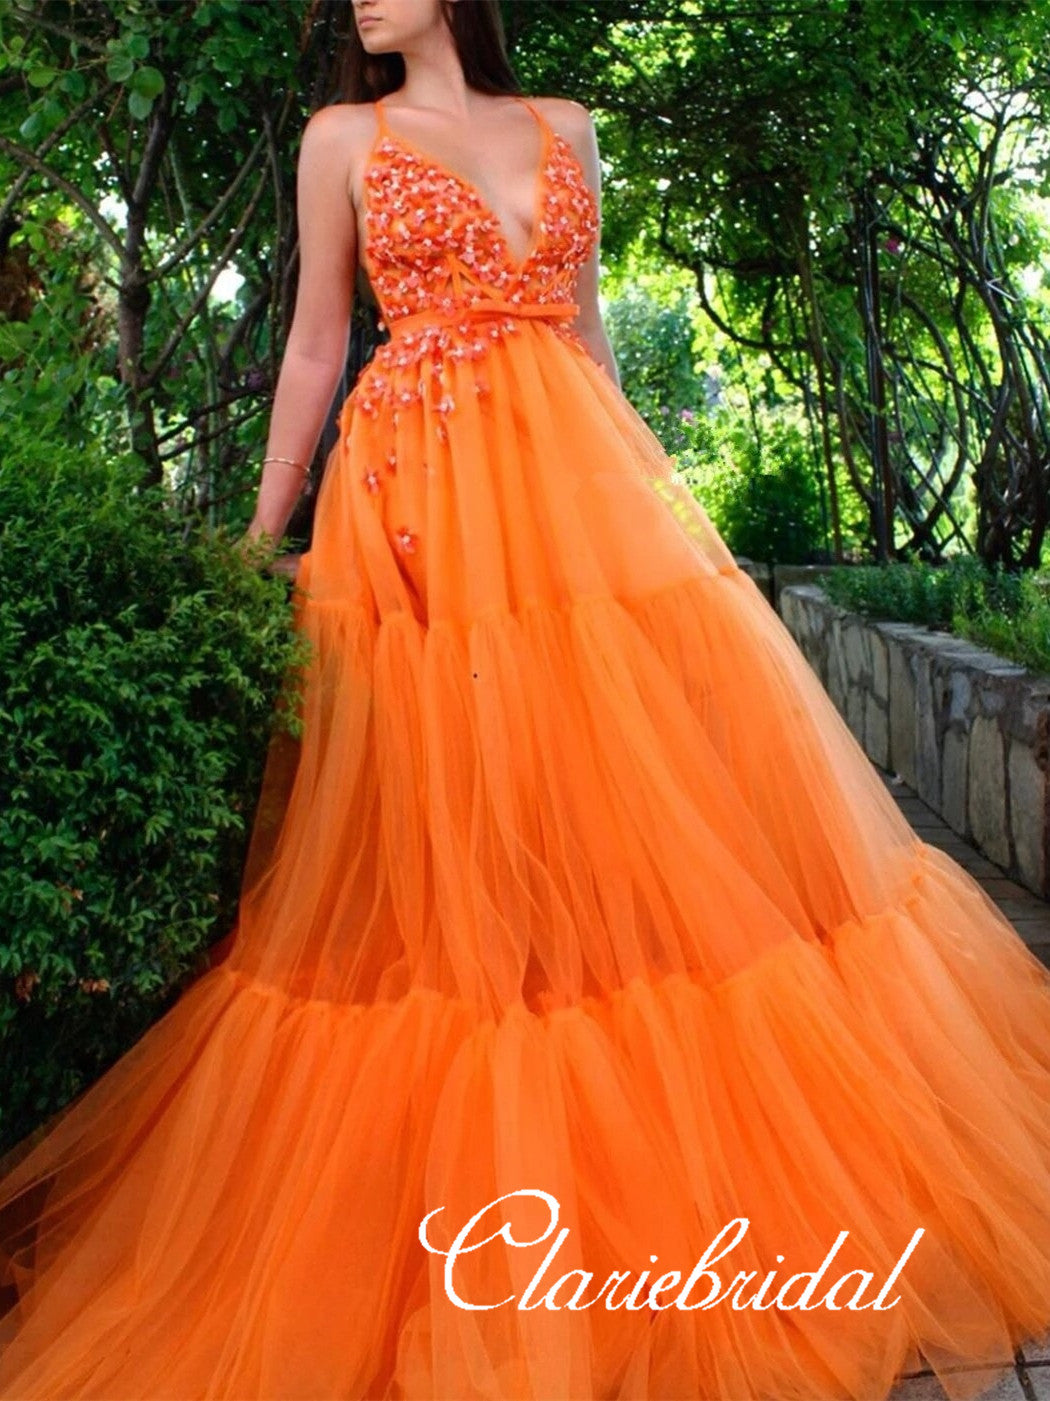 V-neck Long A-line Bright Orange Prom Dresses, Tulle Prom Dresses, Long Prom Dresses